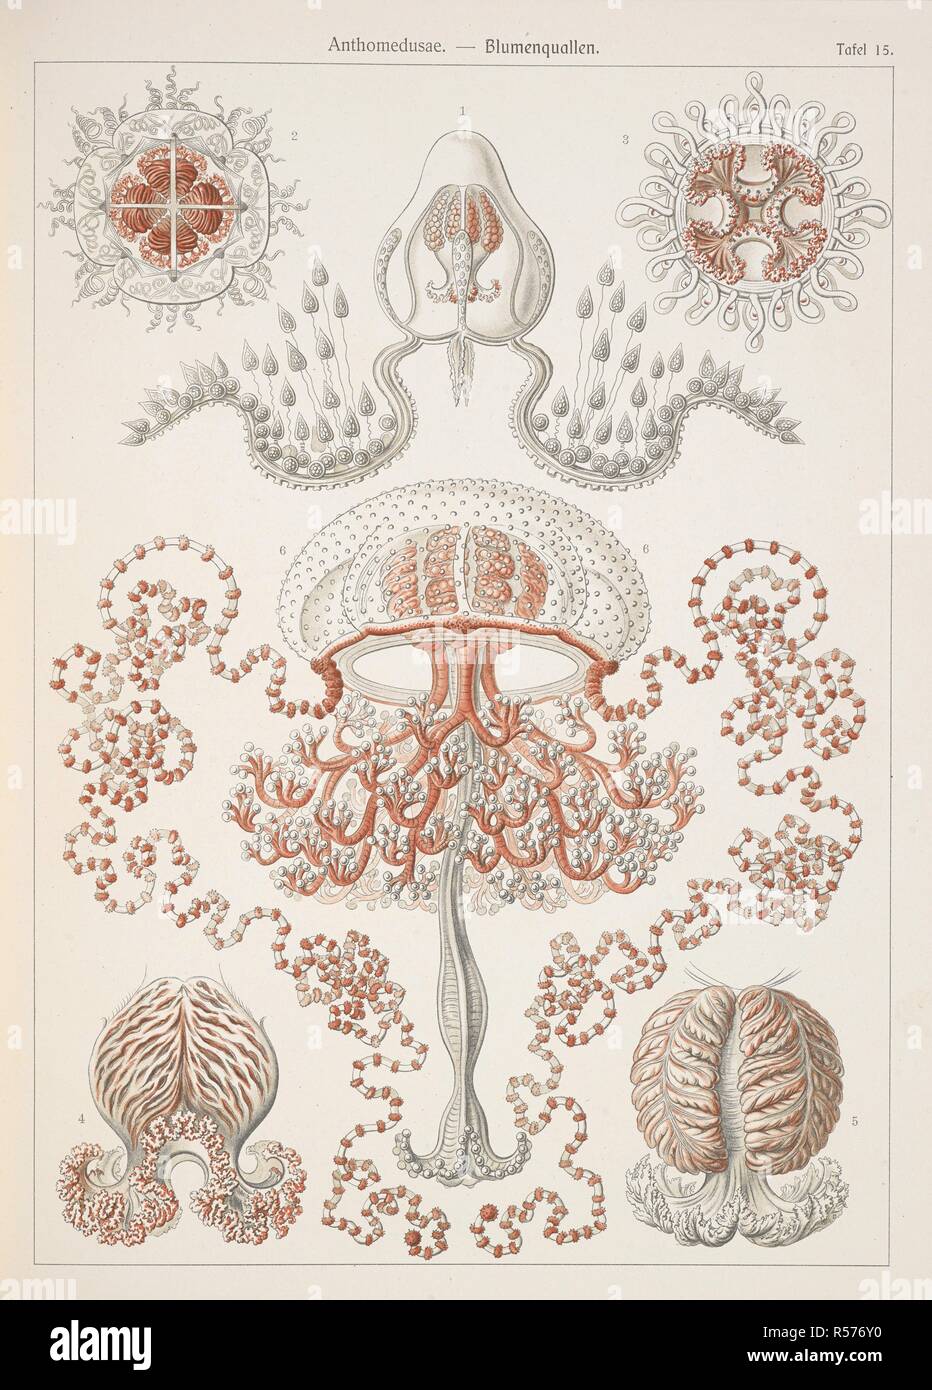 Anthomedusae. Flower jellyfish. Kunstformen der Natur / Ernst Heinrich Philipp August Haeckel. Leipzig : Bibliographisches Inst., 1914 ; Wien. Source: Wf1/1811 plate 15. Stock Photo